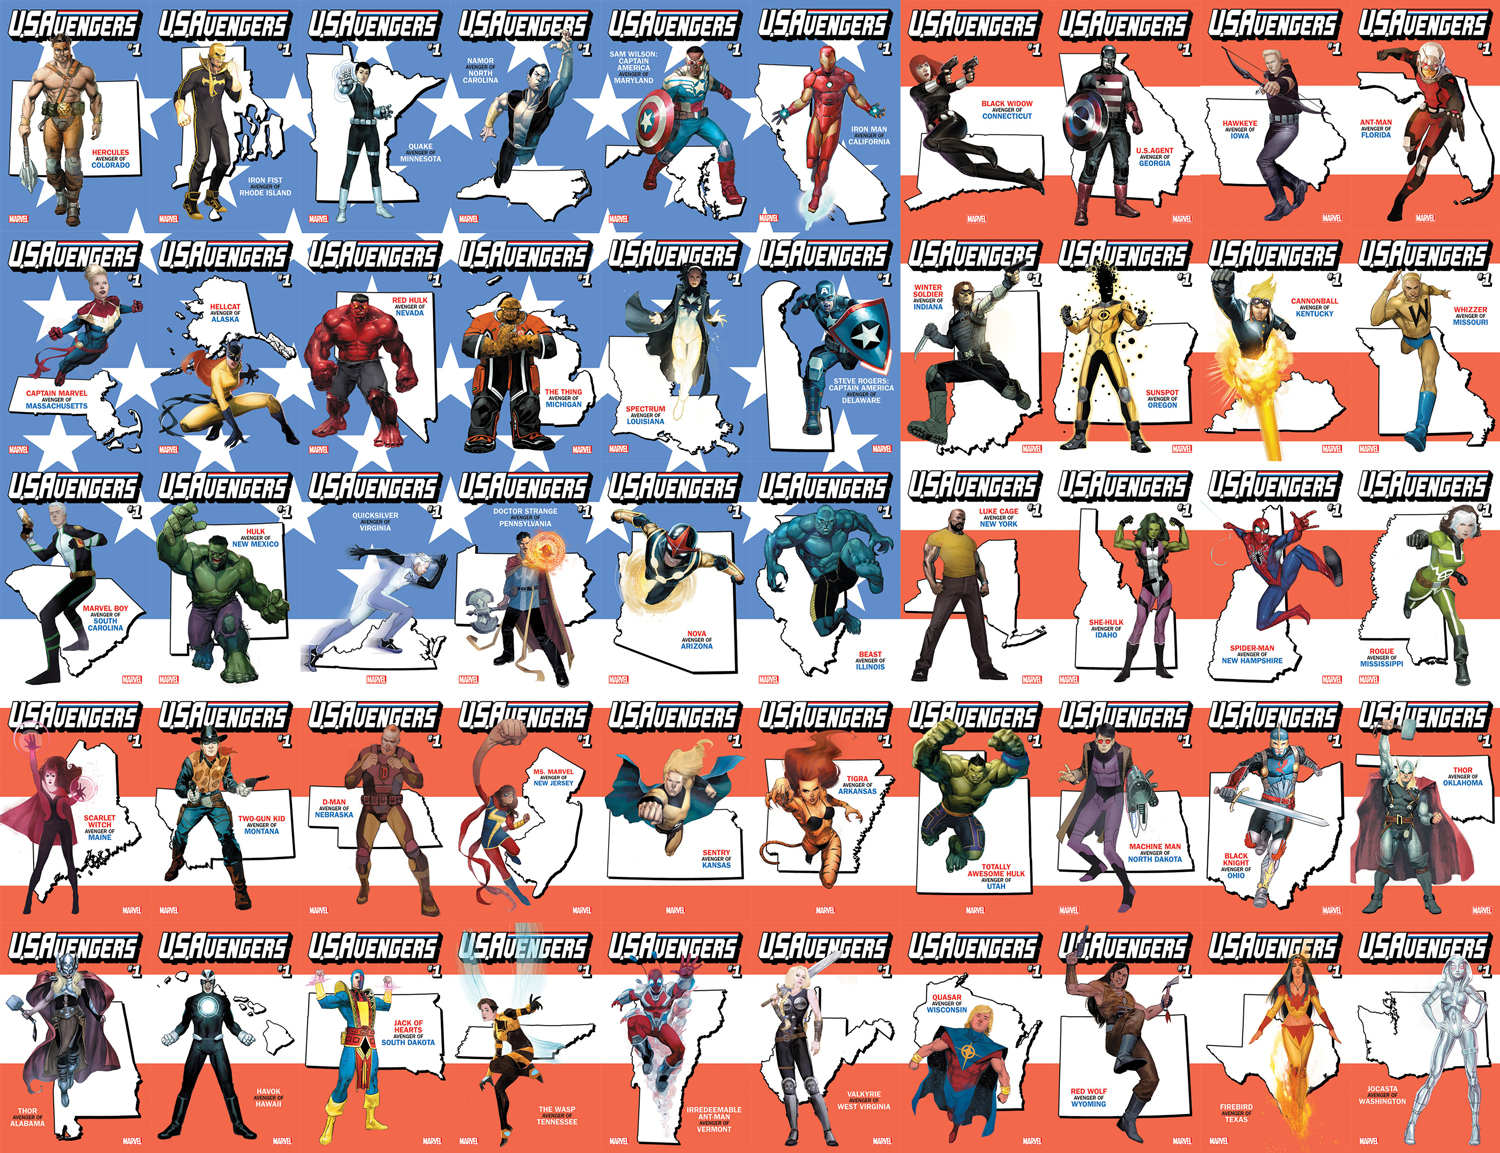 U.S.Avengers001_State_Variants_Flag.jpg